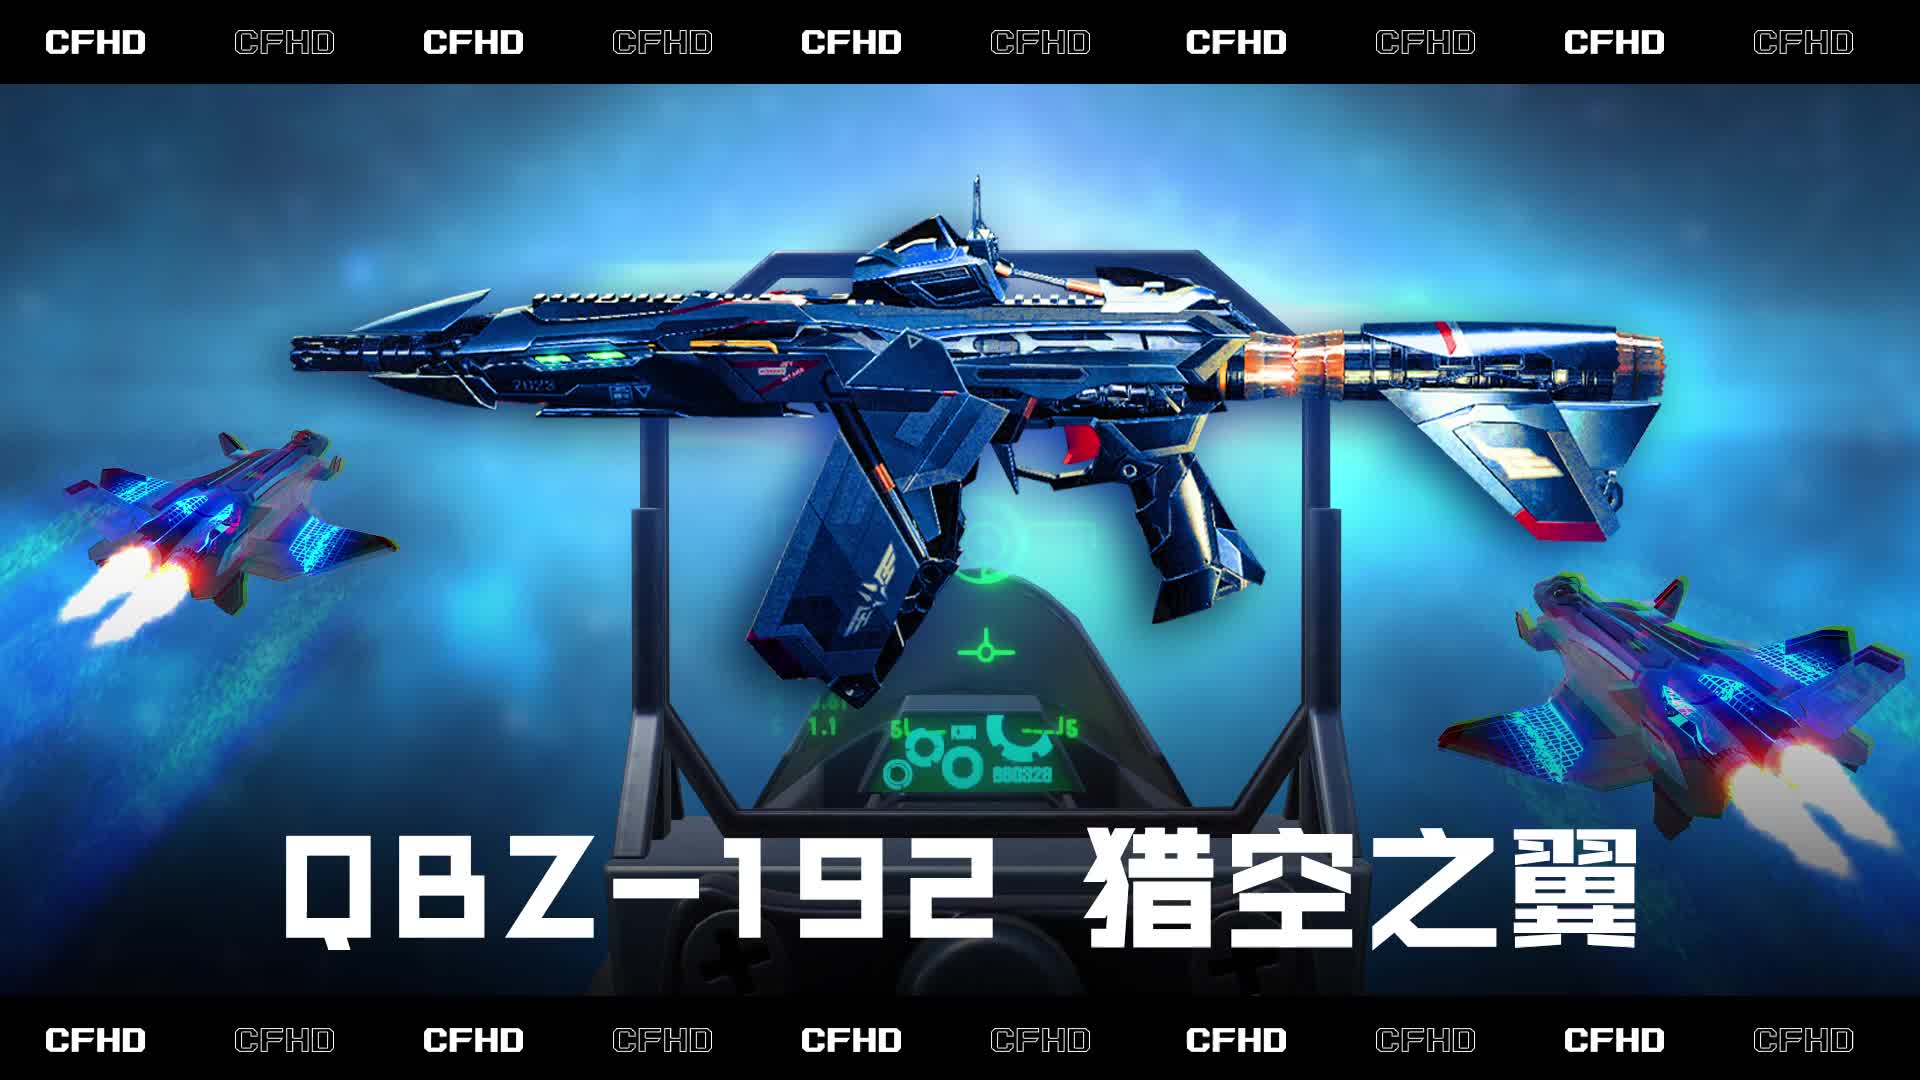 CFHD皮肤展示：QBZ-192 猎空之翼，国产元素加持帅翻天！